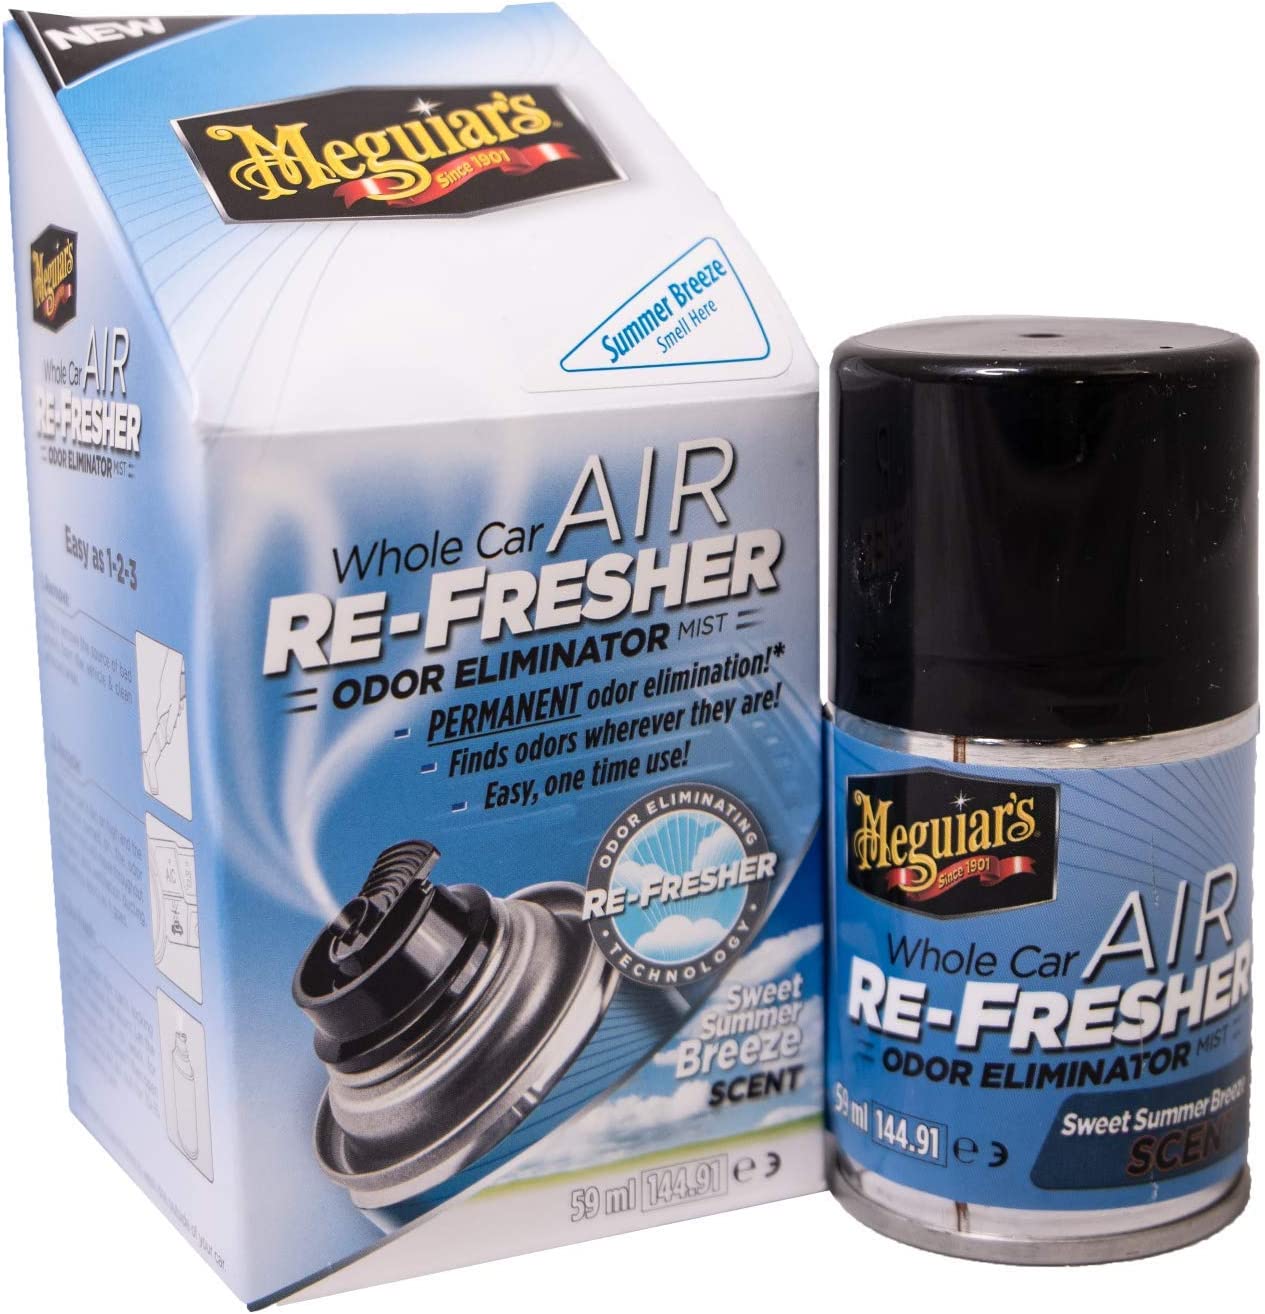 Meguiars Air Re-Fresher Sweet Summer Breeze Lufterfrischer 59 ml